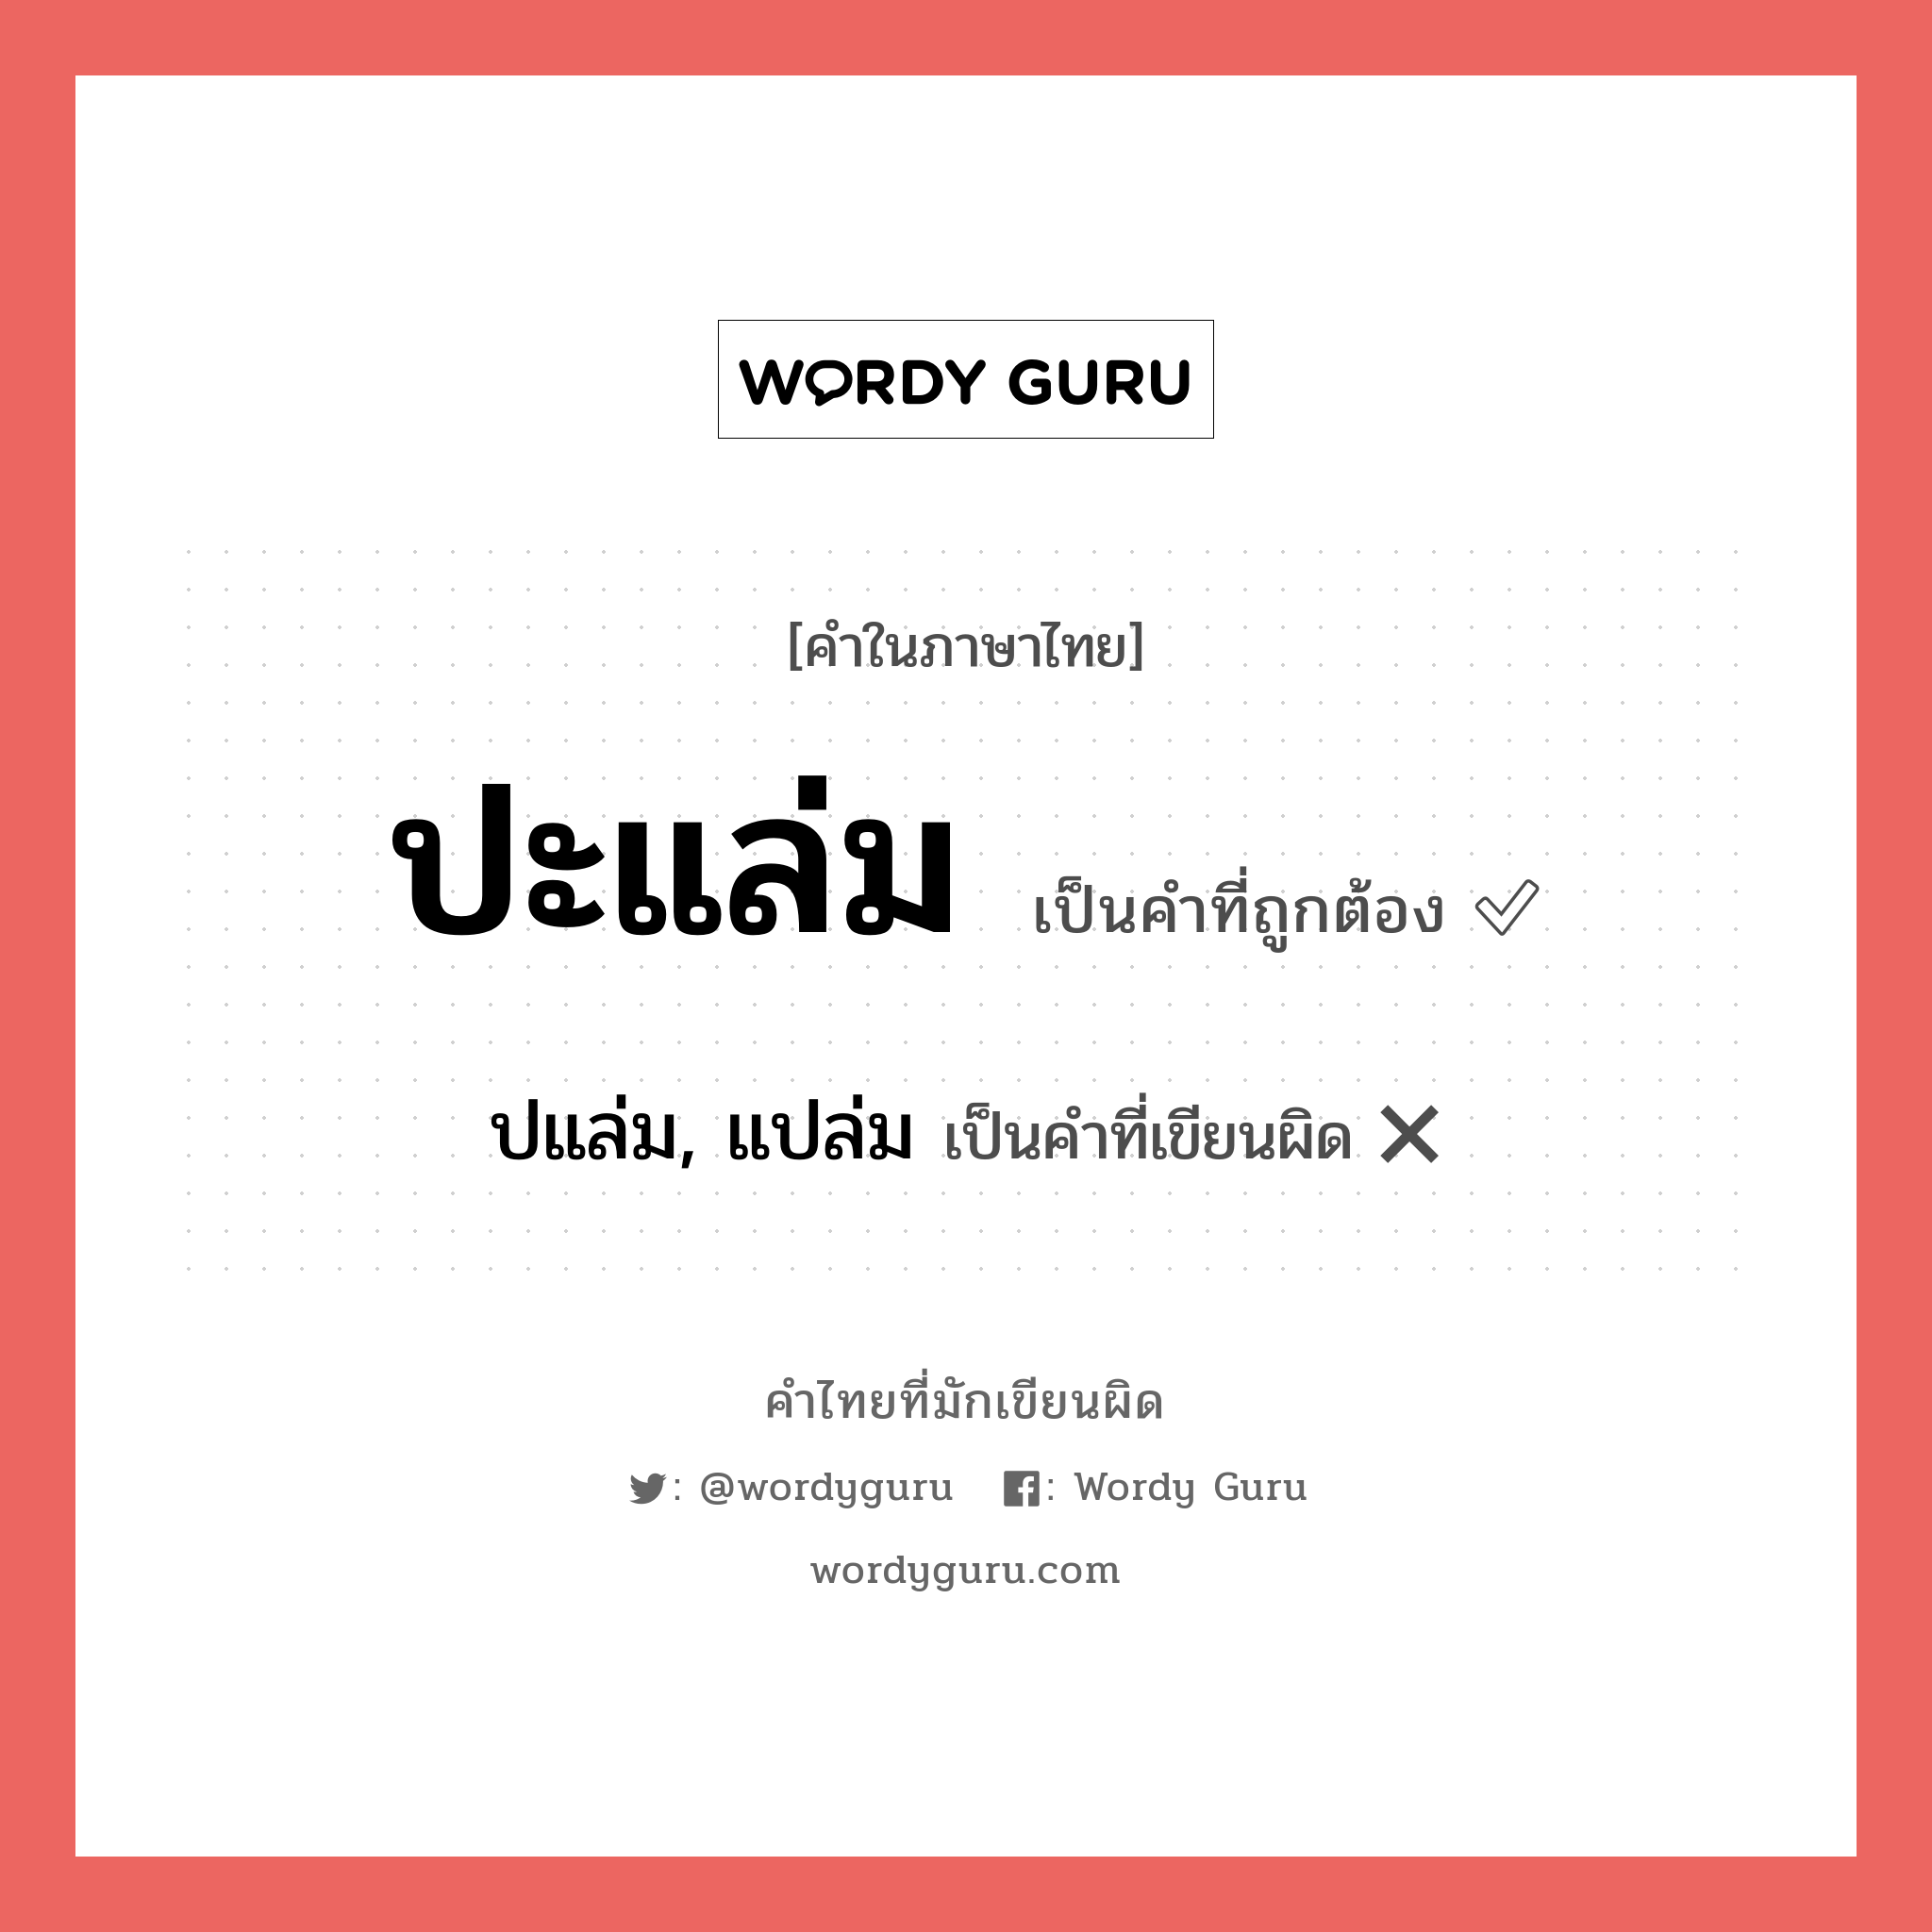 ปะแล่ม หรือ ปแล่ม, แปล่ม คำไหนเขียนถูก?, คำในภาษาไทยที่มักเขียนผิด ปะแล่ม คำที่ผิด ❌ ปแล่ม, แปล่ม